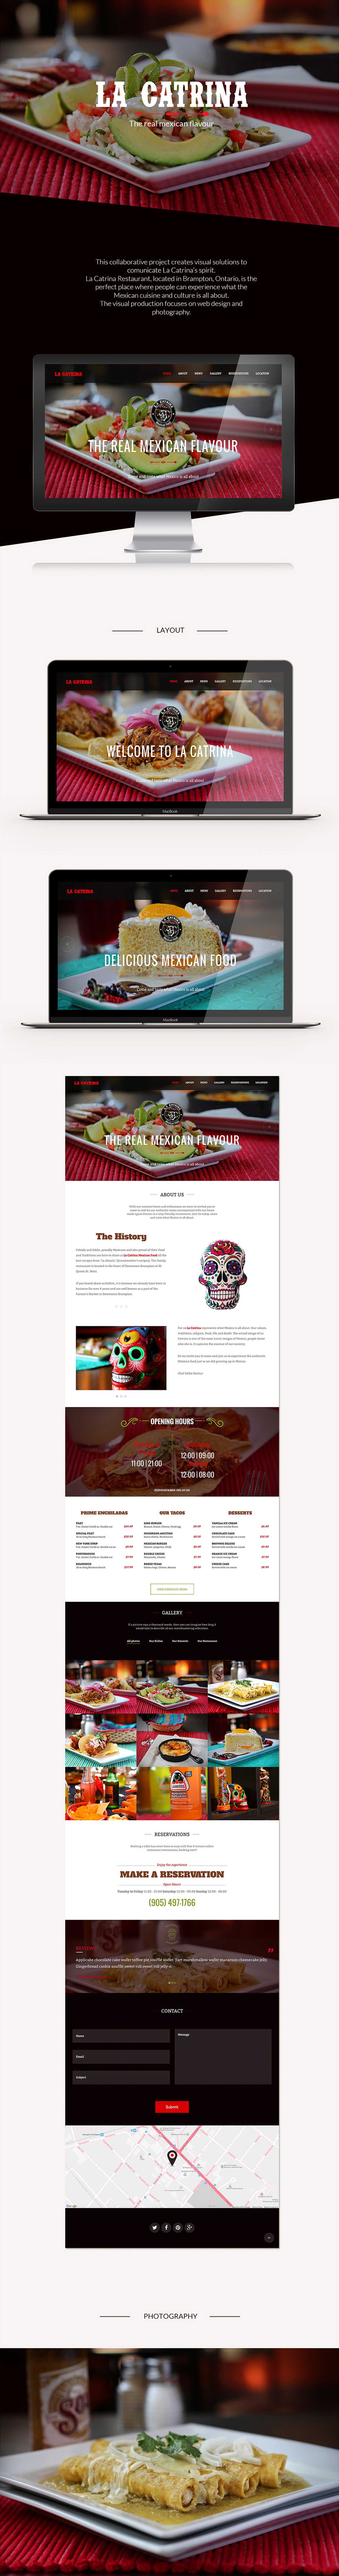 restaurant Web design Mexican Food  la catrina ux UI